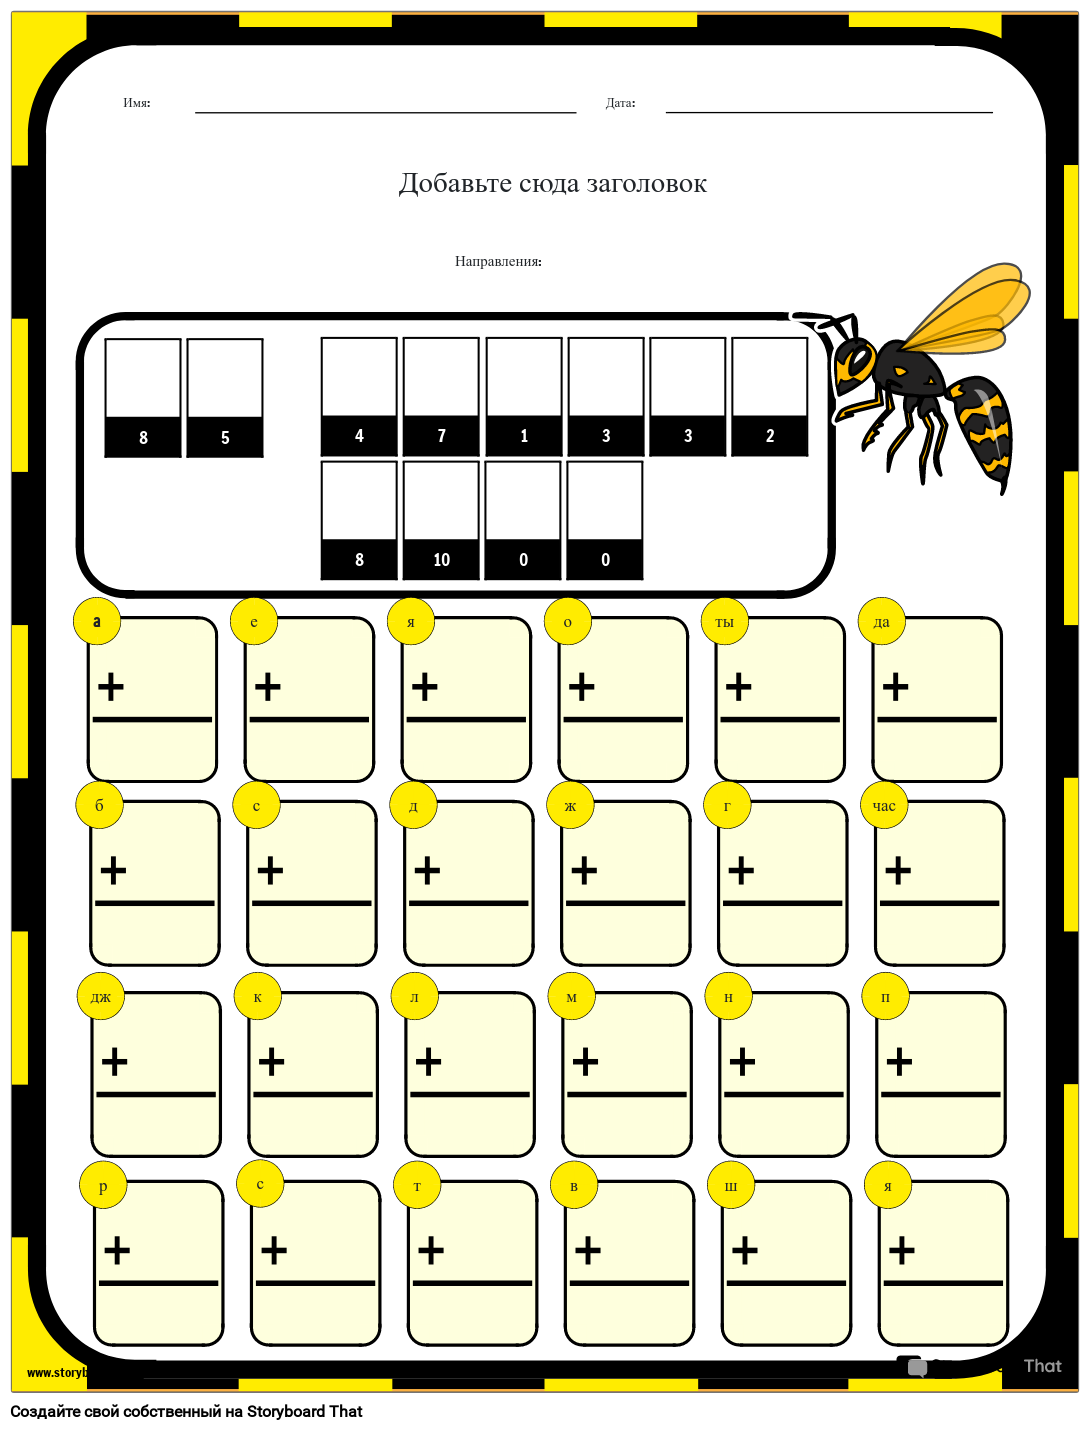 Как пчелы ходят в школу — задание по математической загадке